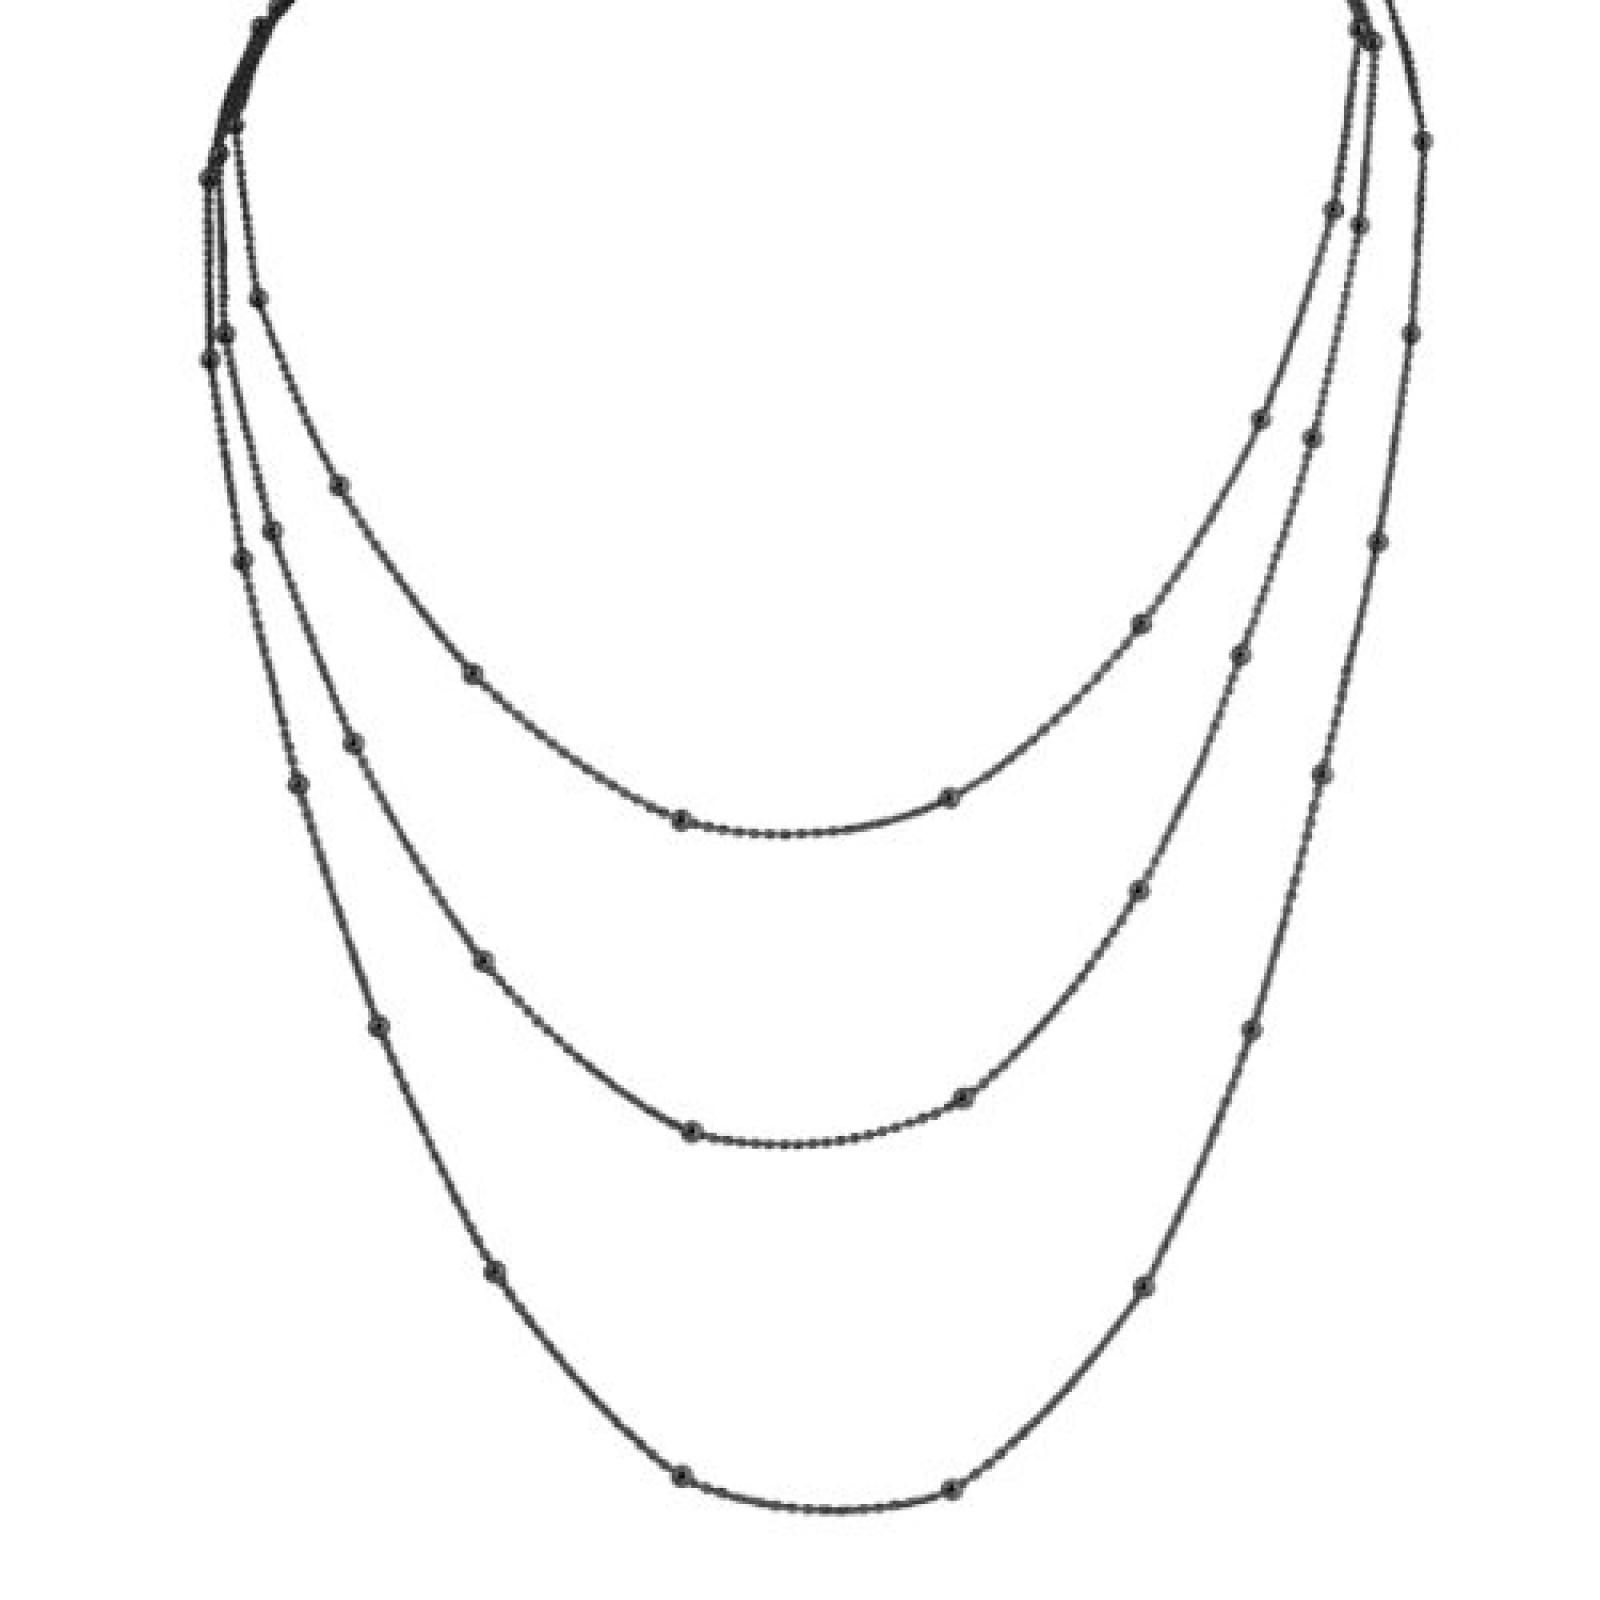 Bella Donna Damen-Halskette 925 Sterling Silber Karabiner geschwärzt 87.0 cm bis 100.0 cm 75830009S 